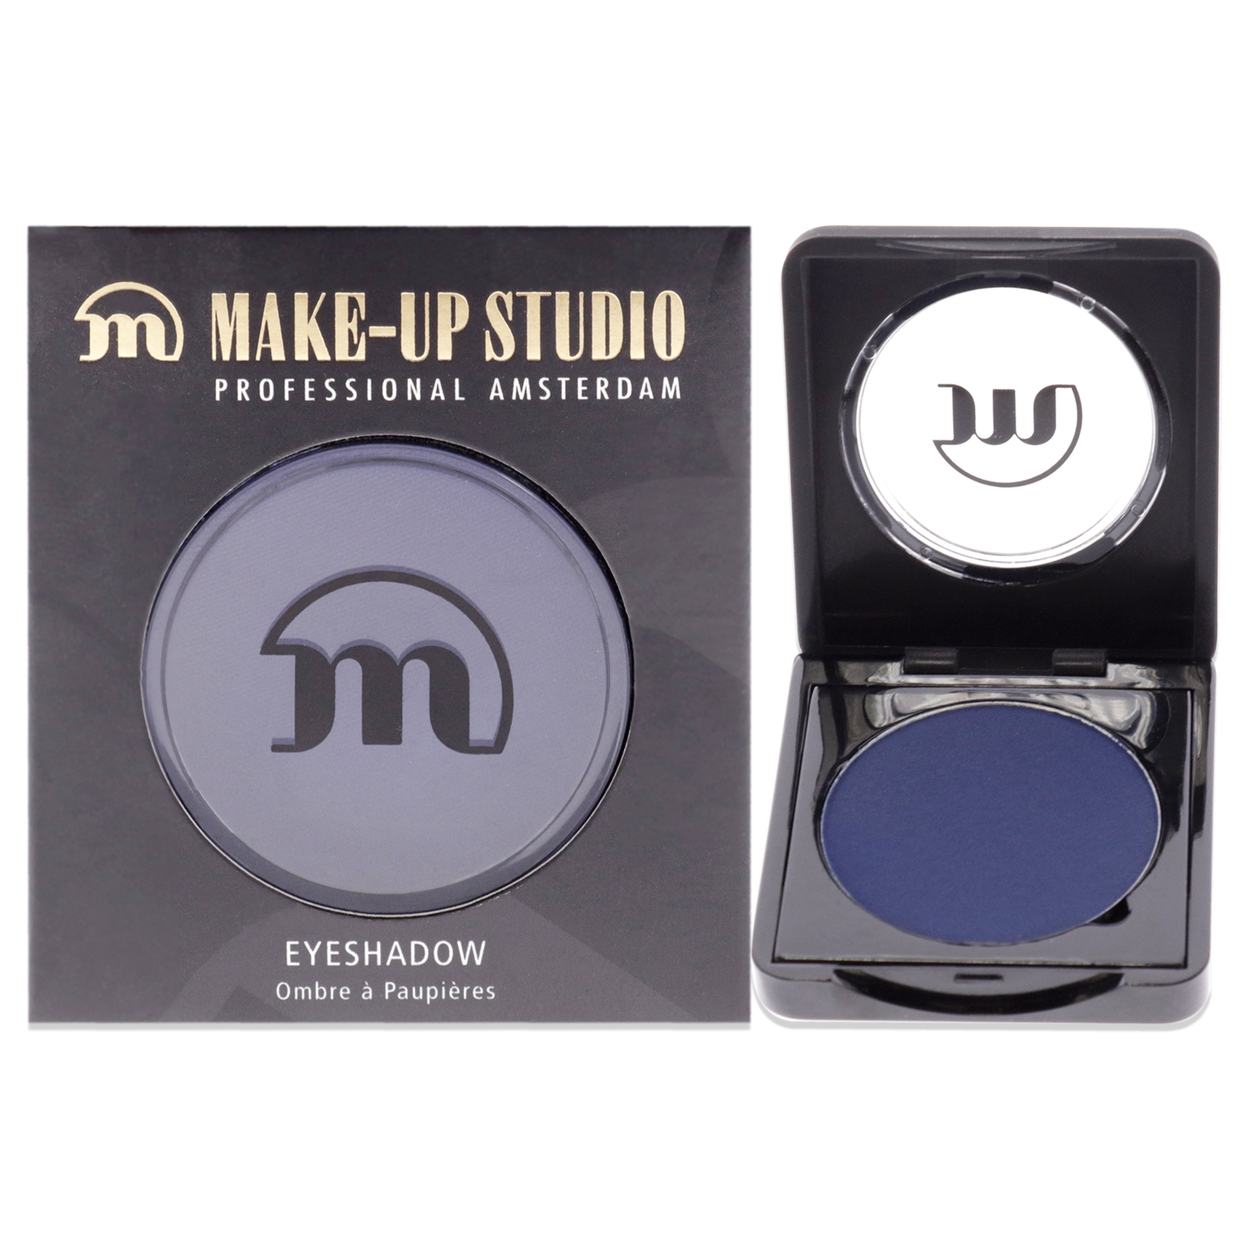 Make-Up Studio Eyeshadow - 302 Eye Shadow 0.11 Oz